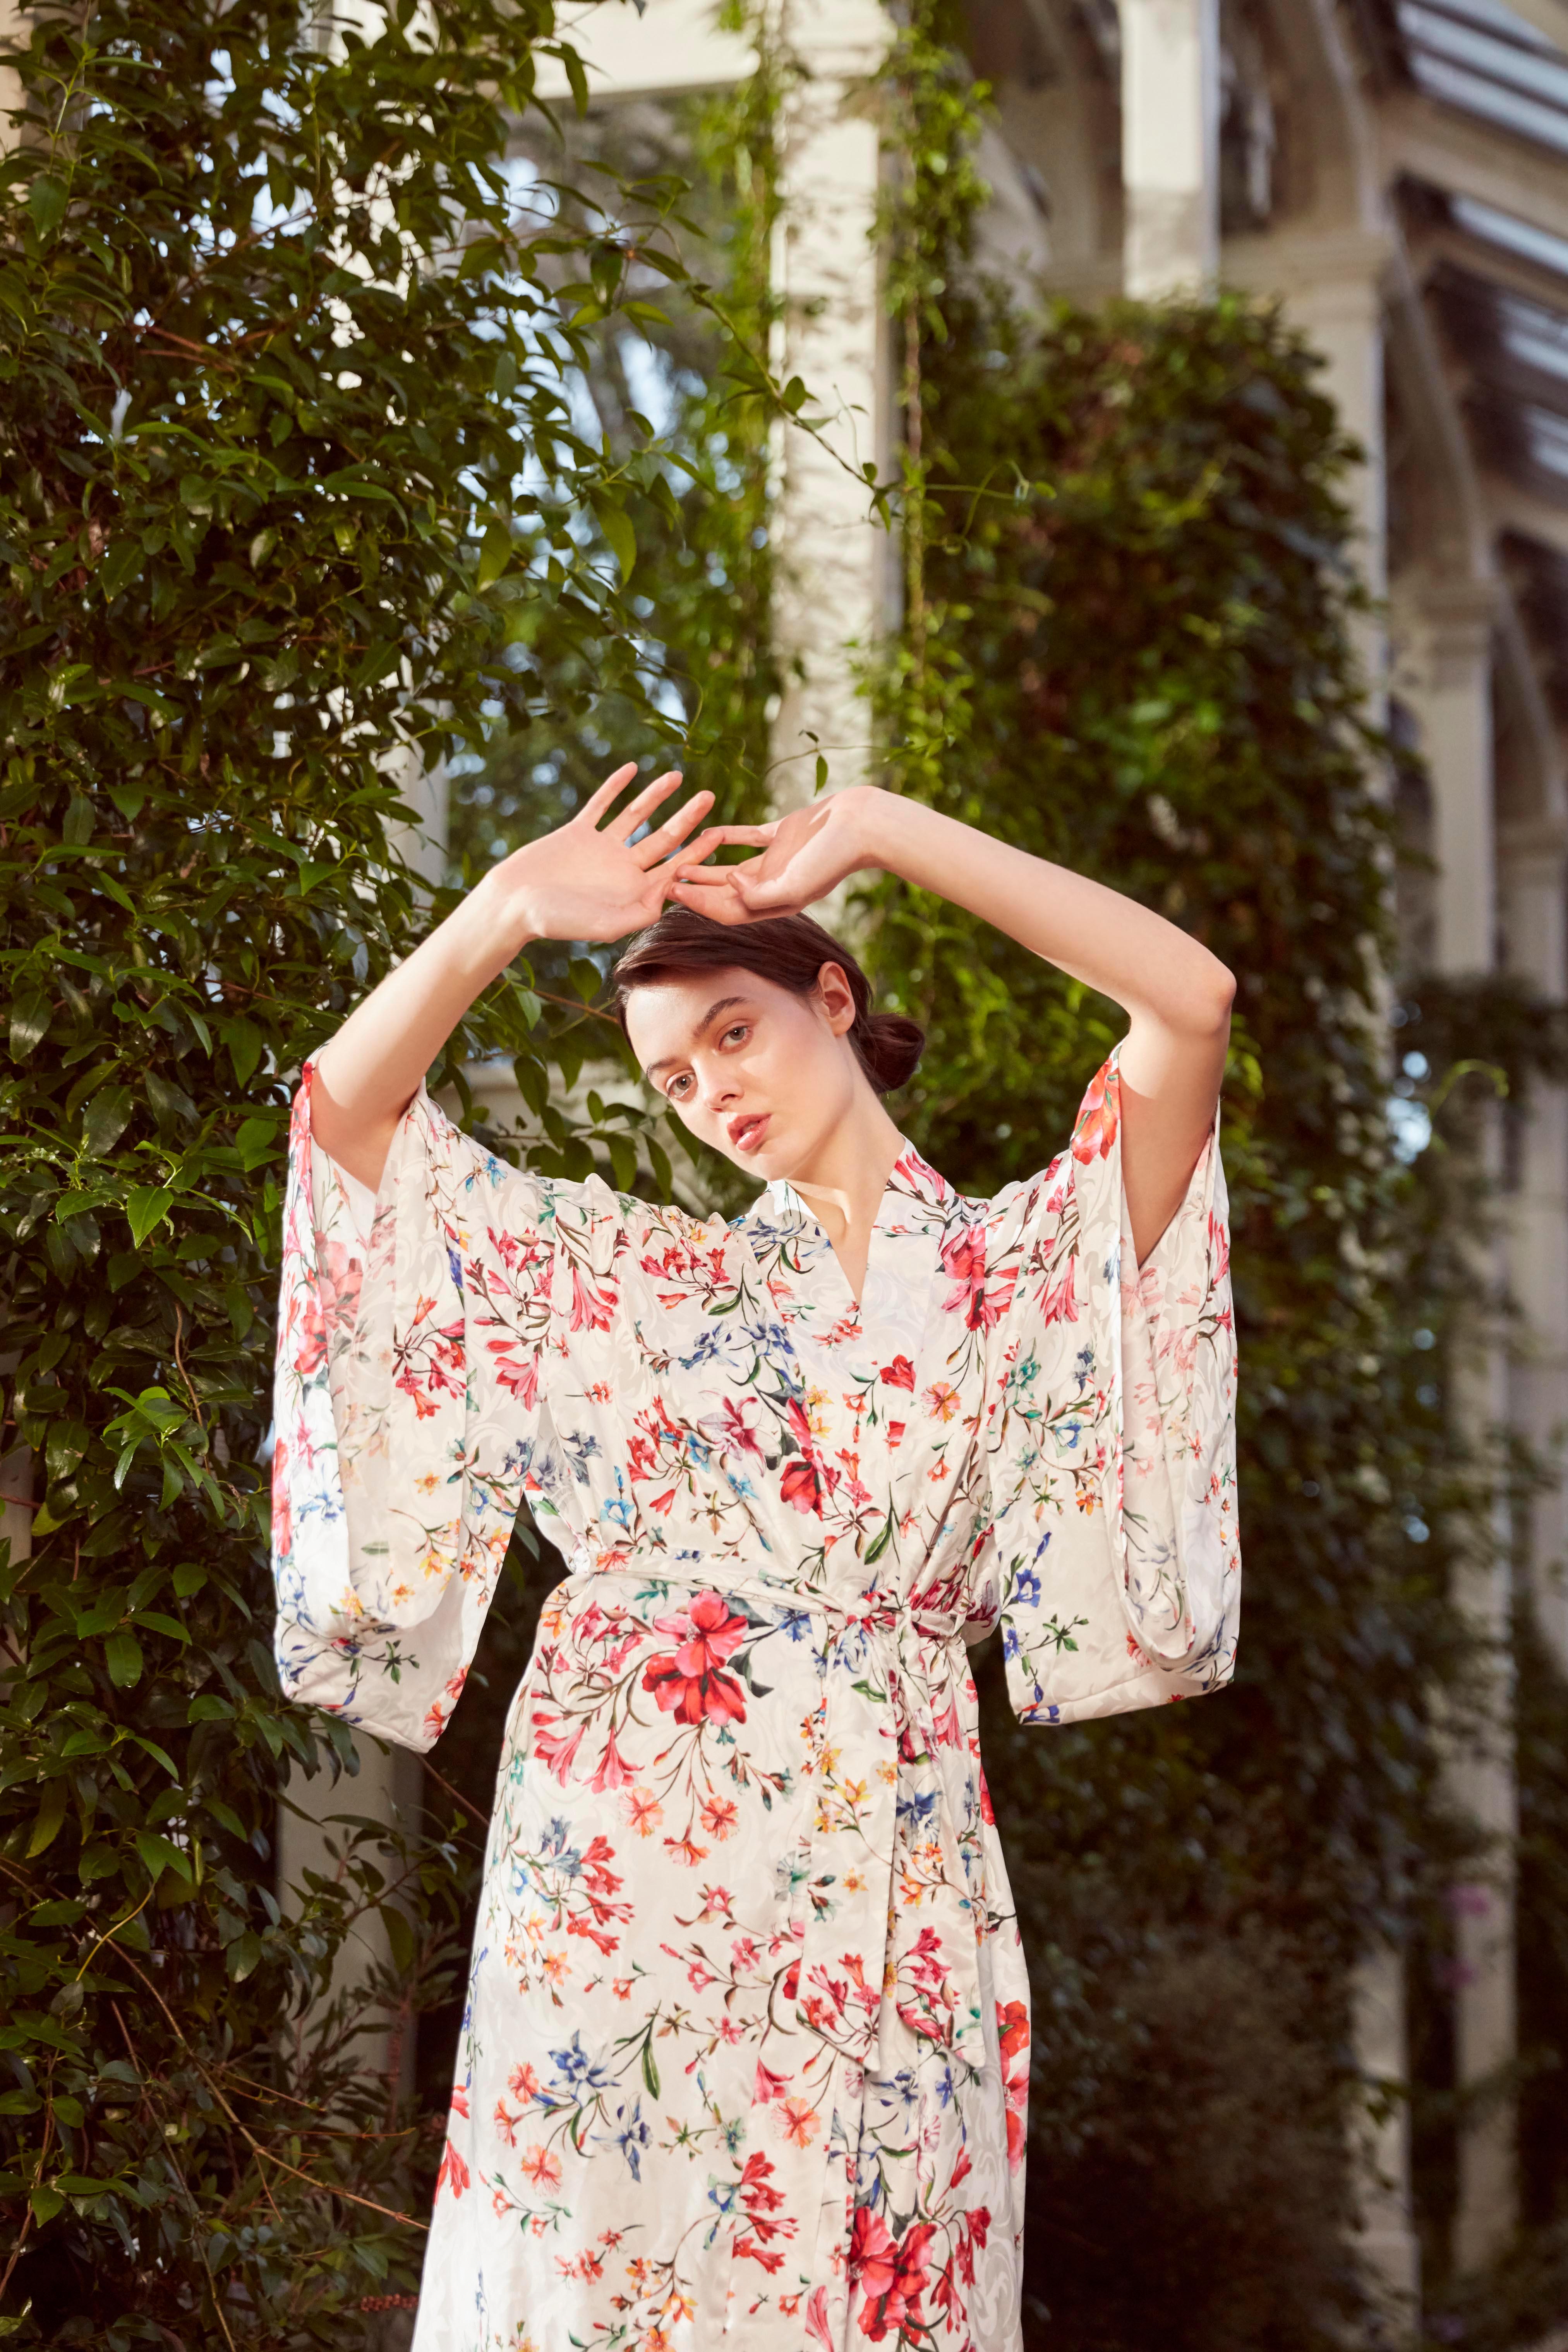 Robe kimono à fleurs Verheyen London en satin de soie italien - Taille unique 

Le kimono de Verheyen London est la robe parfaite pour une tenue de soirée ou une robe manteau à porter avec un jean et des talons en soirée.  

Fabriqué à la main à